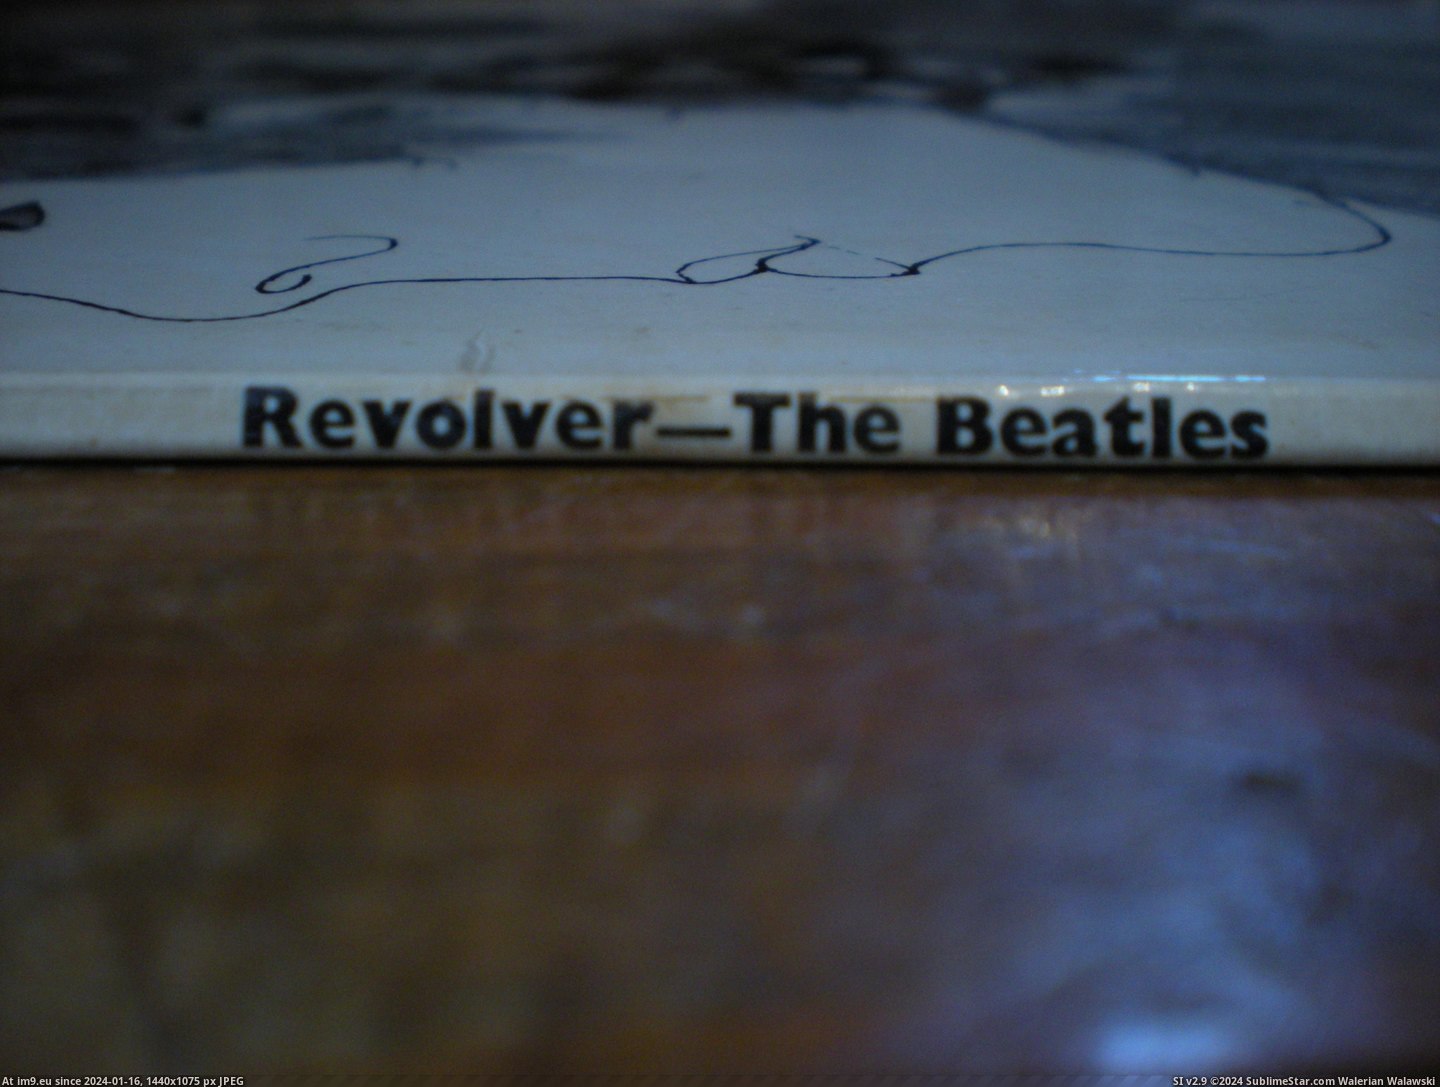  #Revolver  Revolver-2-2 8 Pic. (Obraz z album new 1))